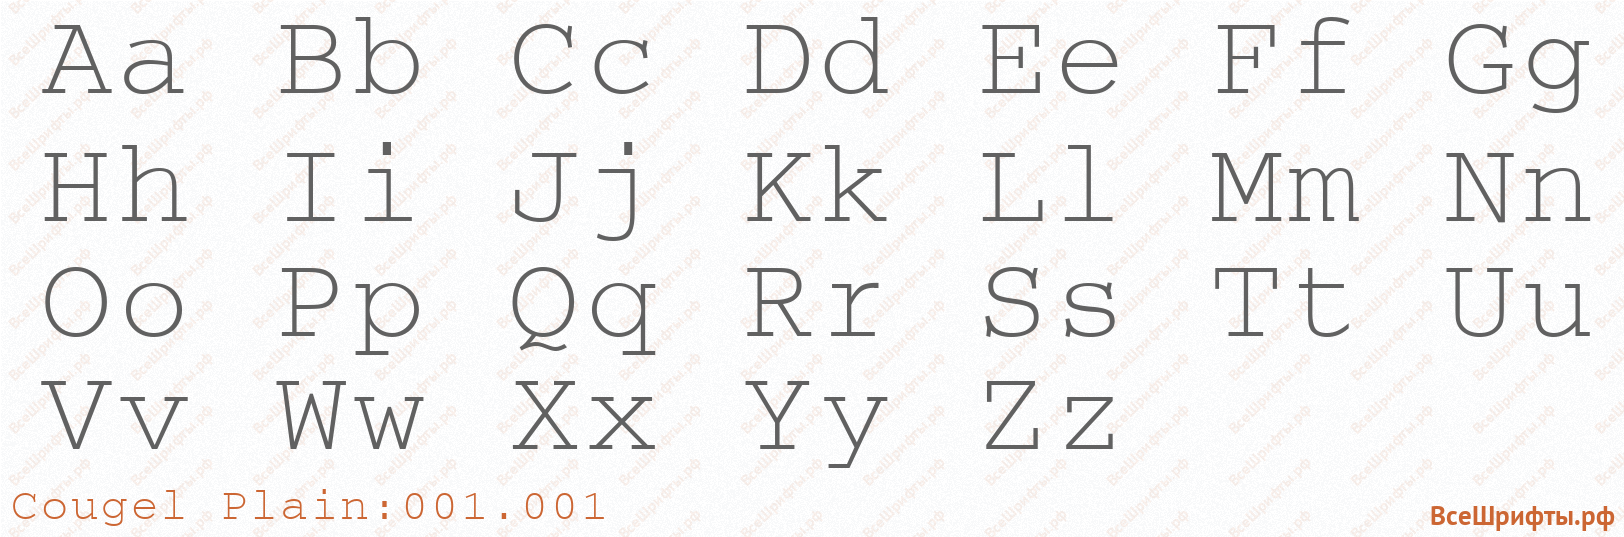 Шрифт Cougel Plain:001.001 с латинскими буквами